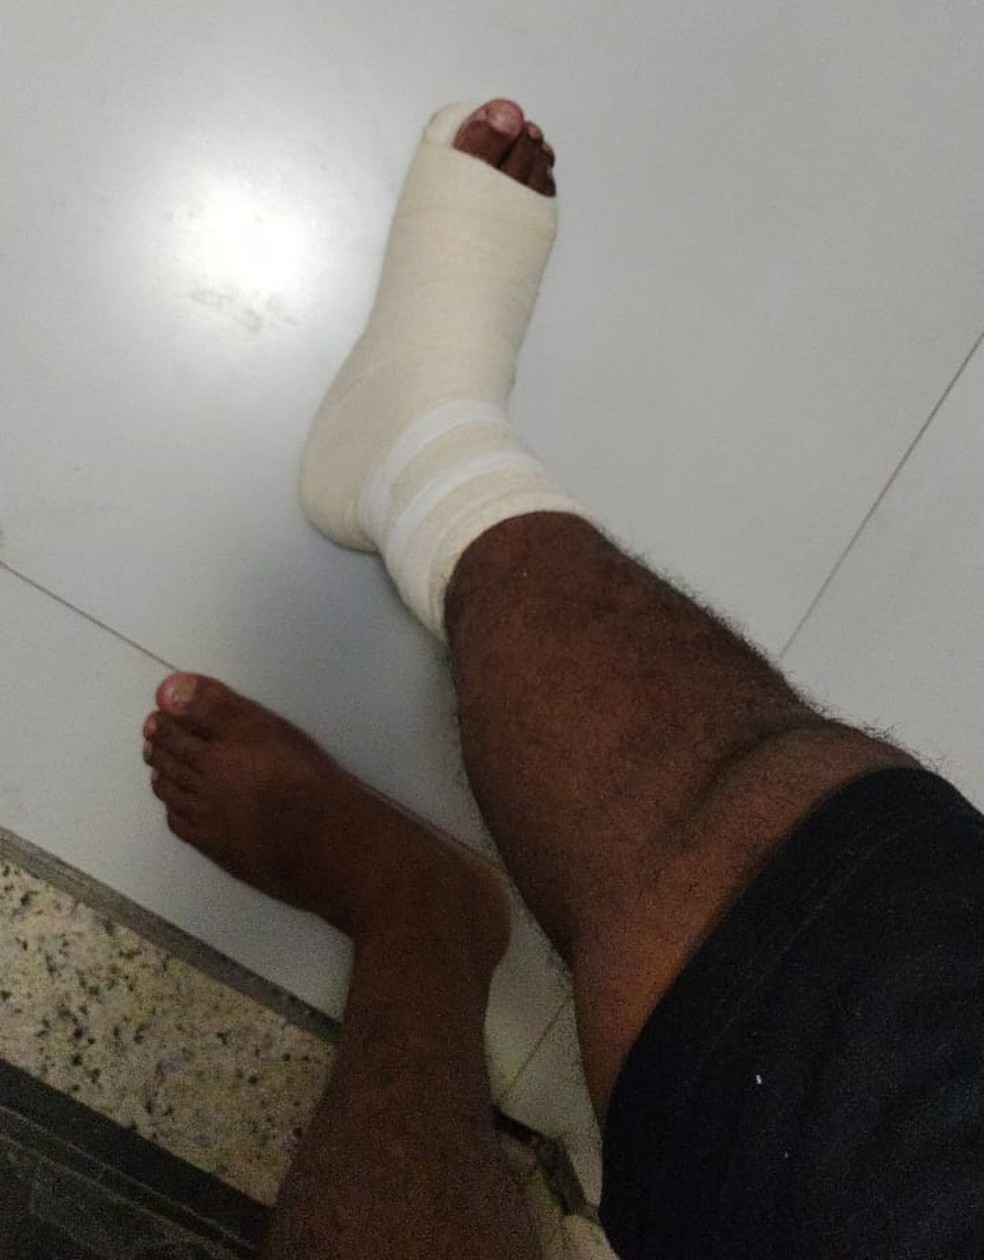 Paulo Arifa sofreu uma torção no pé direito após empurrão em shopping — Foto: Arquivo pessoal